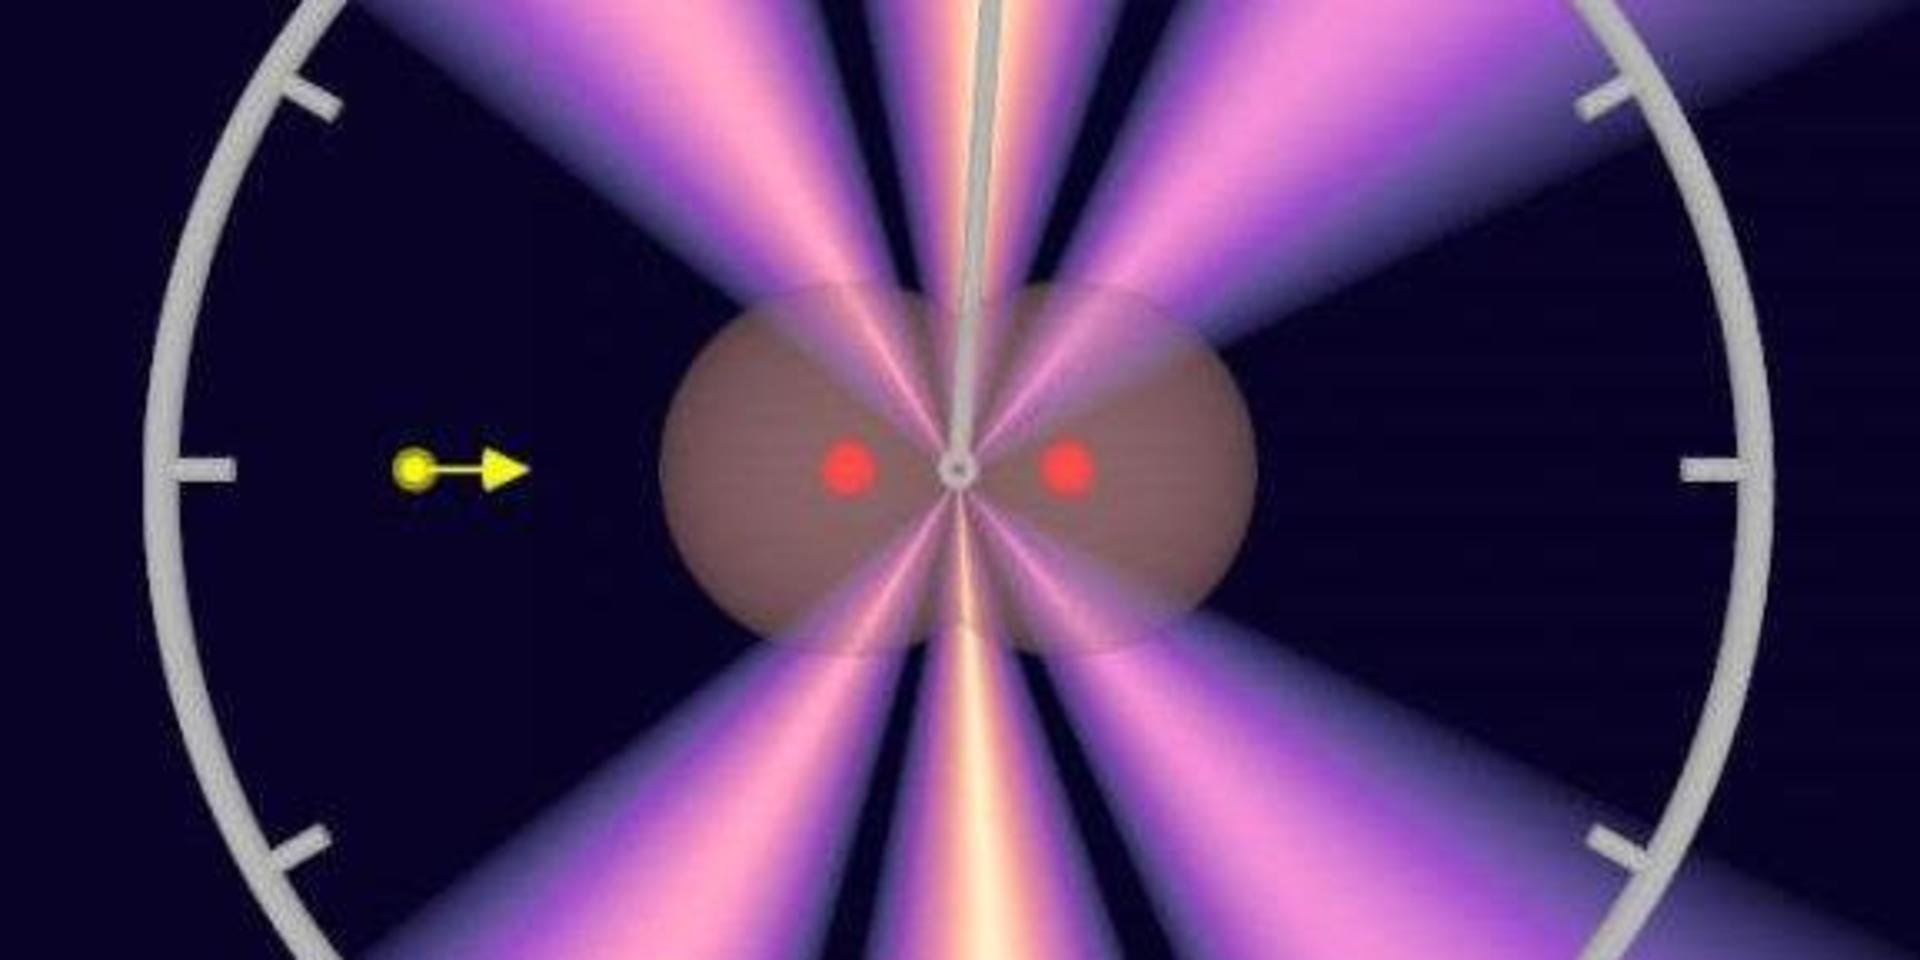 Bilden visar hur fotonen (gul) producerar elektronvågor ur elektronmolnet (det grå) och när vågorna möts (det violetta). De röda prickarna är atomkärnorna i vätgasmolekylen. Det violetta mönstret drar något åt höger, vilket gör det möjligt att beräkna hur lång tid det tar för fotonen att gå från den ena atomen till den andra.